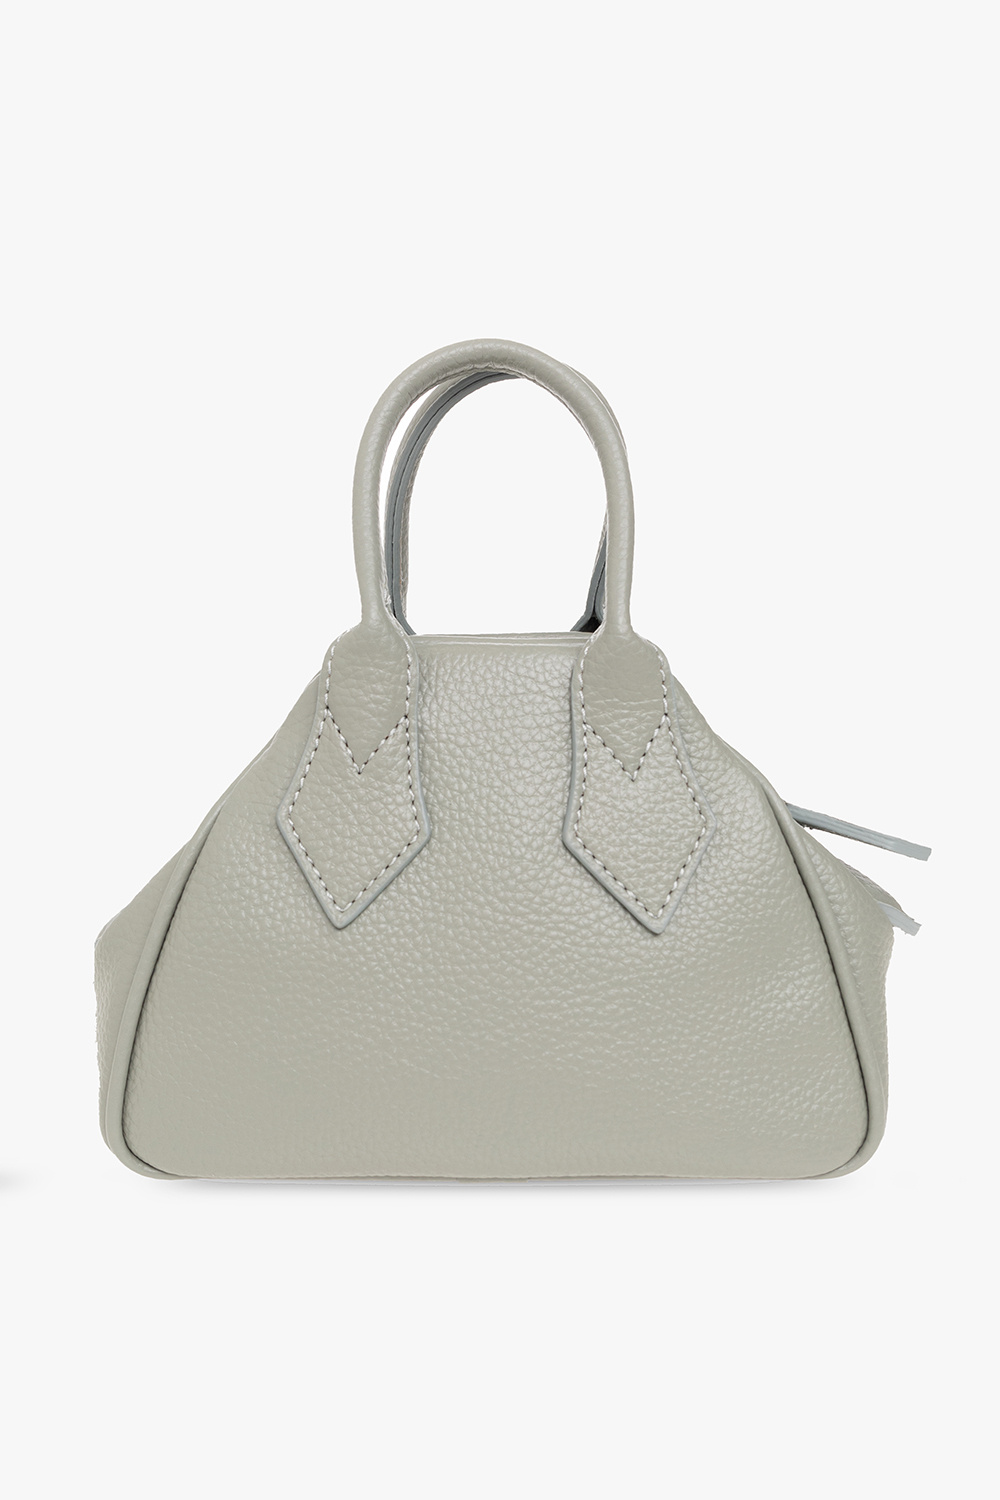 Vivienne Westwood ‘Yasmin Mini’ shoulder Carrier bag